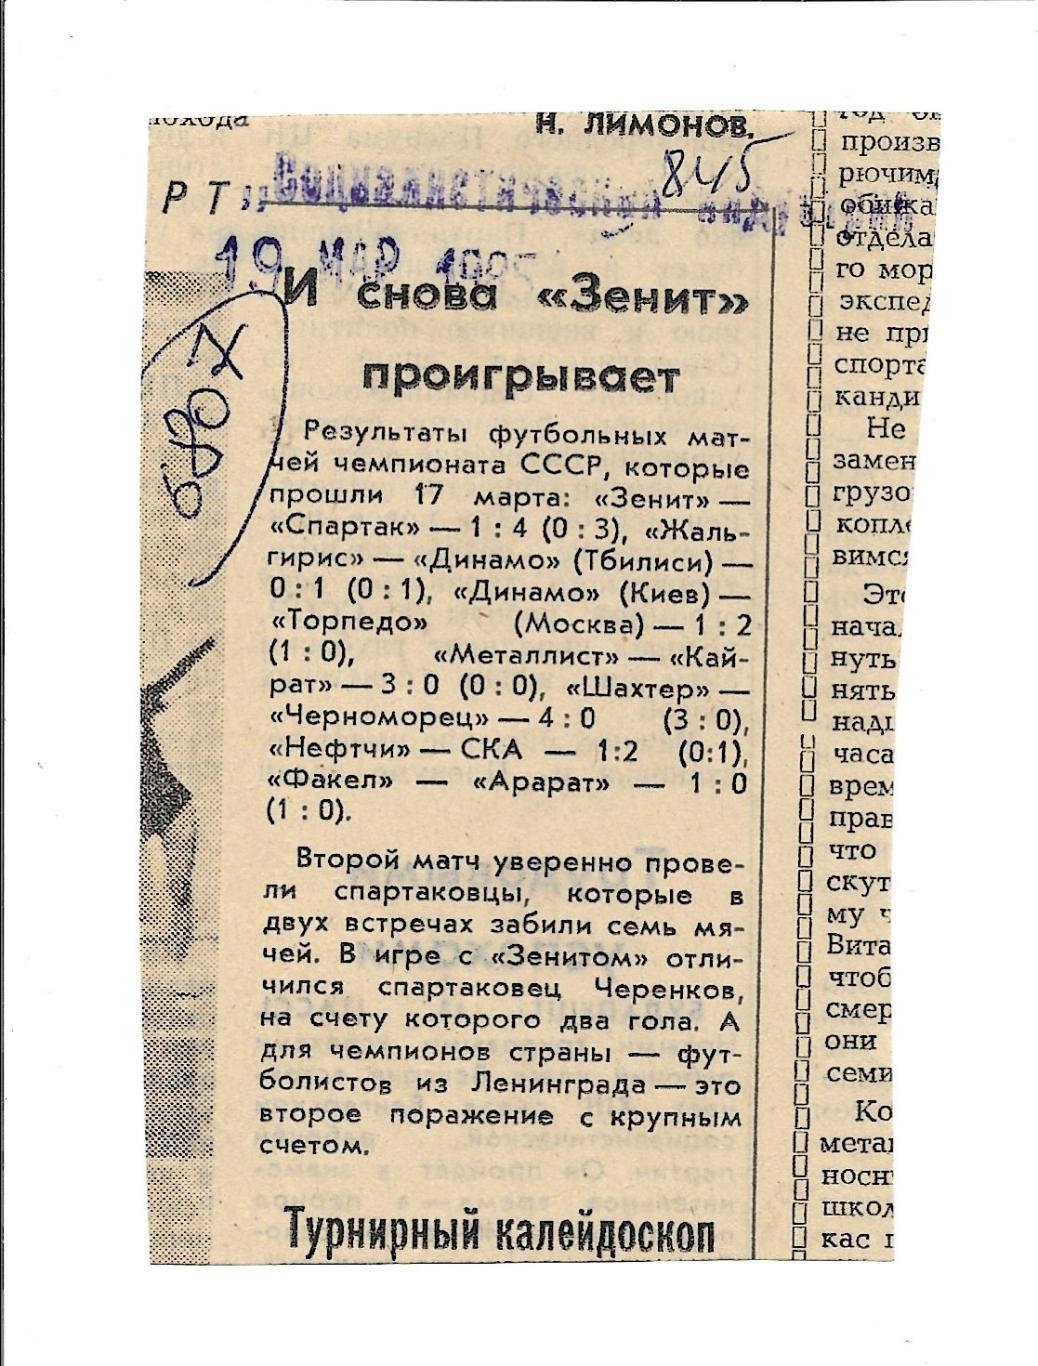 Обзор матчей высшей лиги._1985. _(6807)